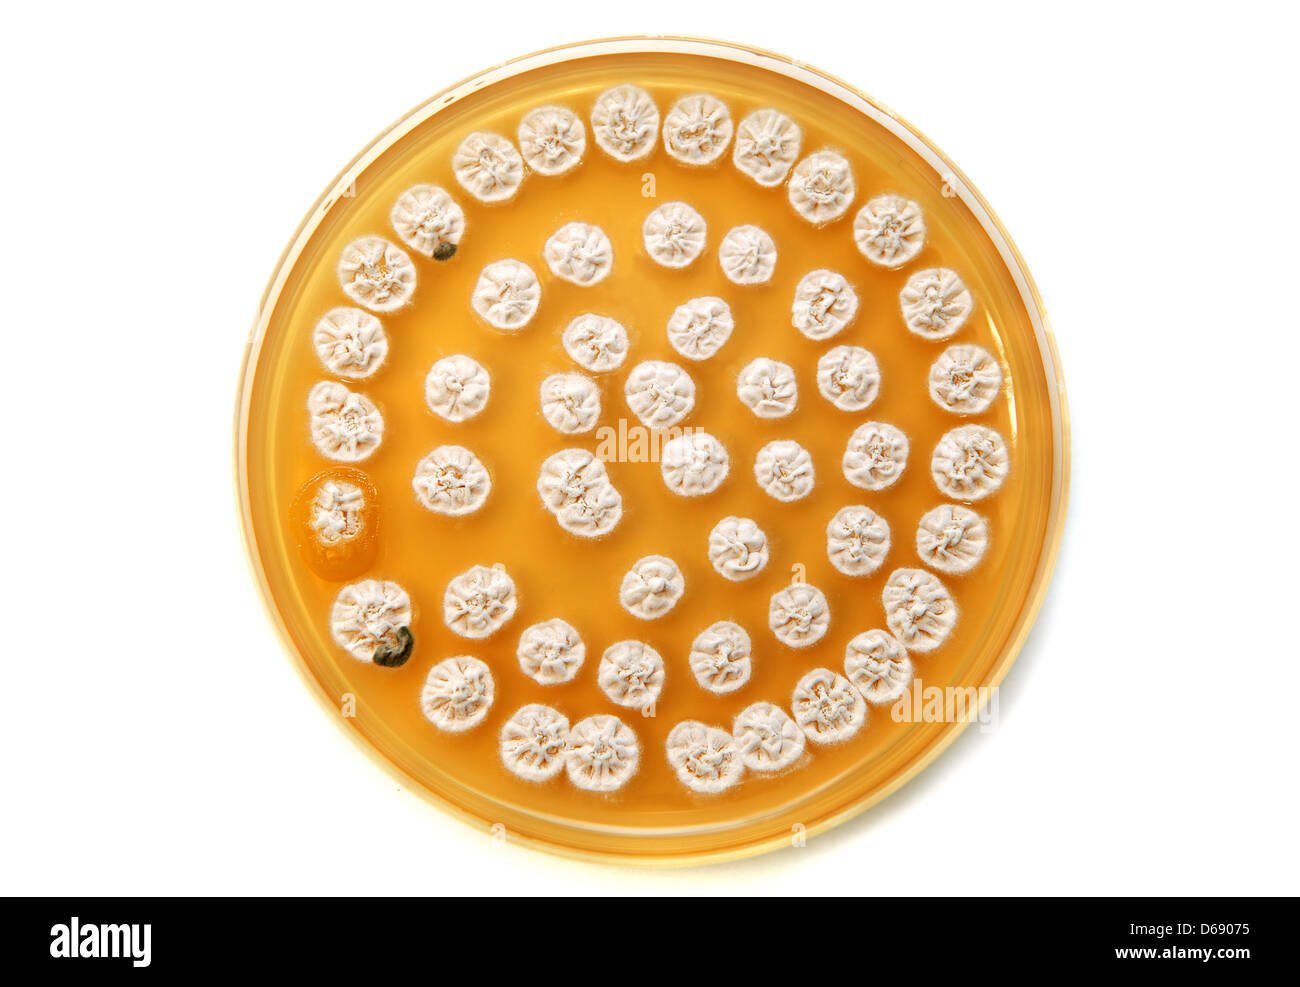 white fungi on agar plate Stock Photo